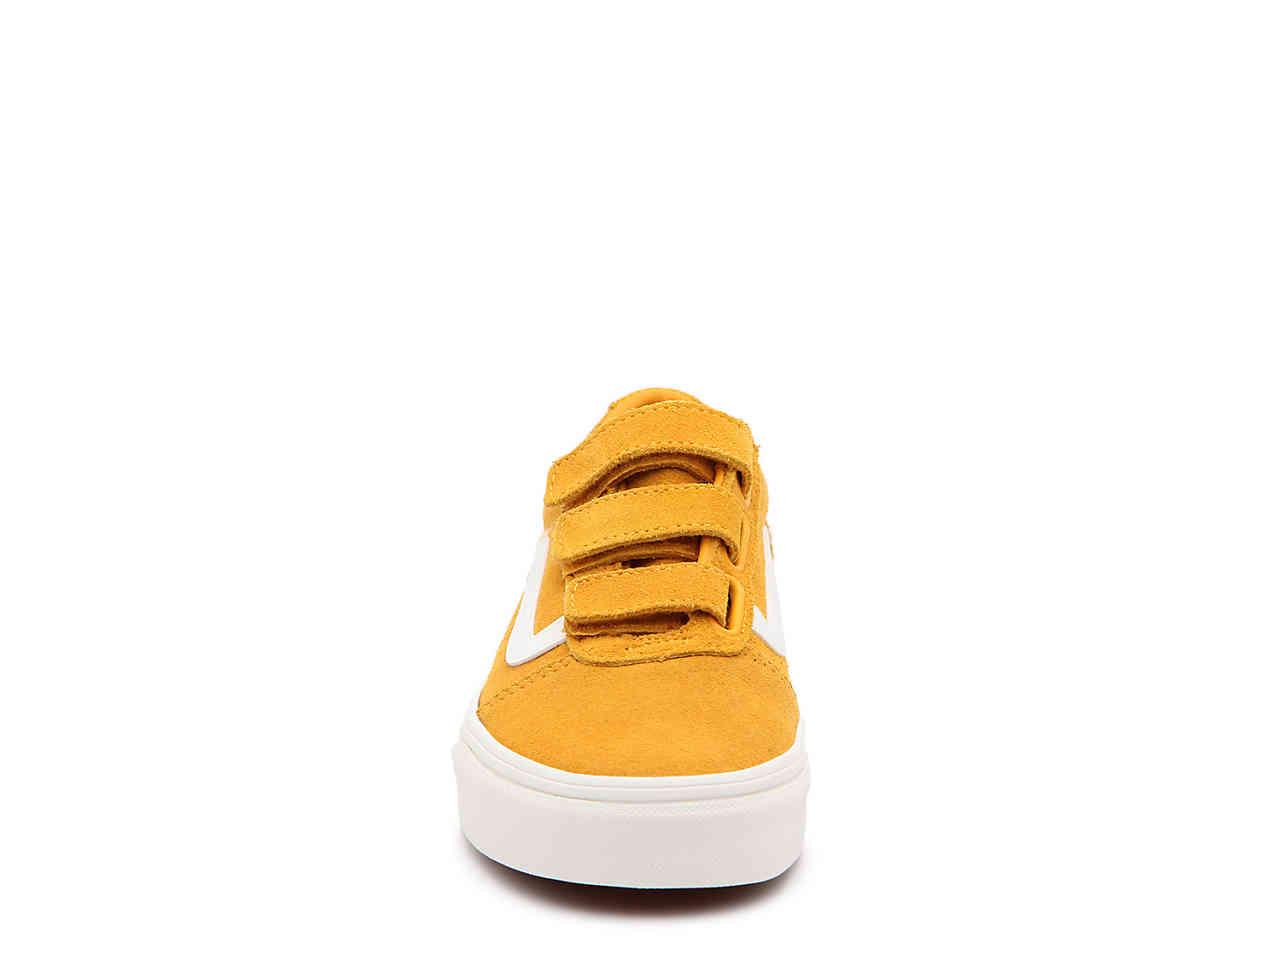 Vans Unisex Babies’ Ward V Velcro Suede Sneakers